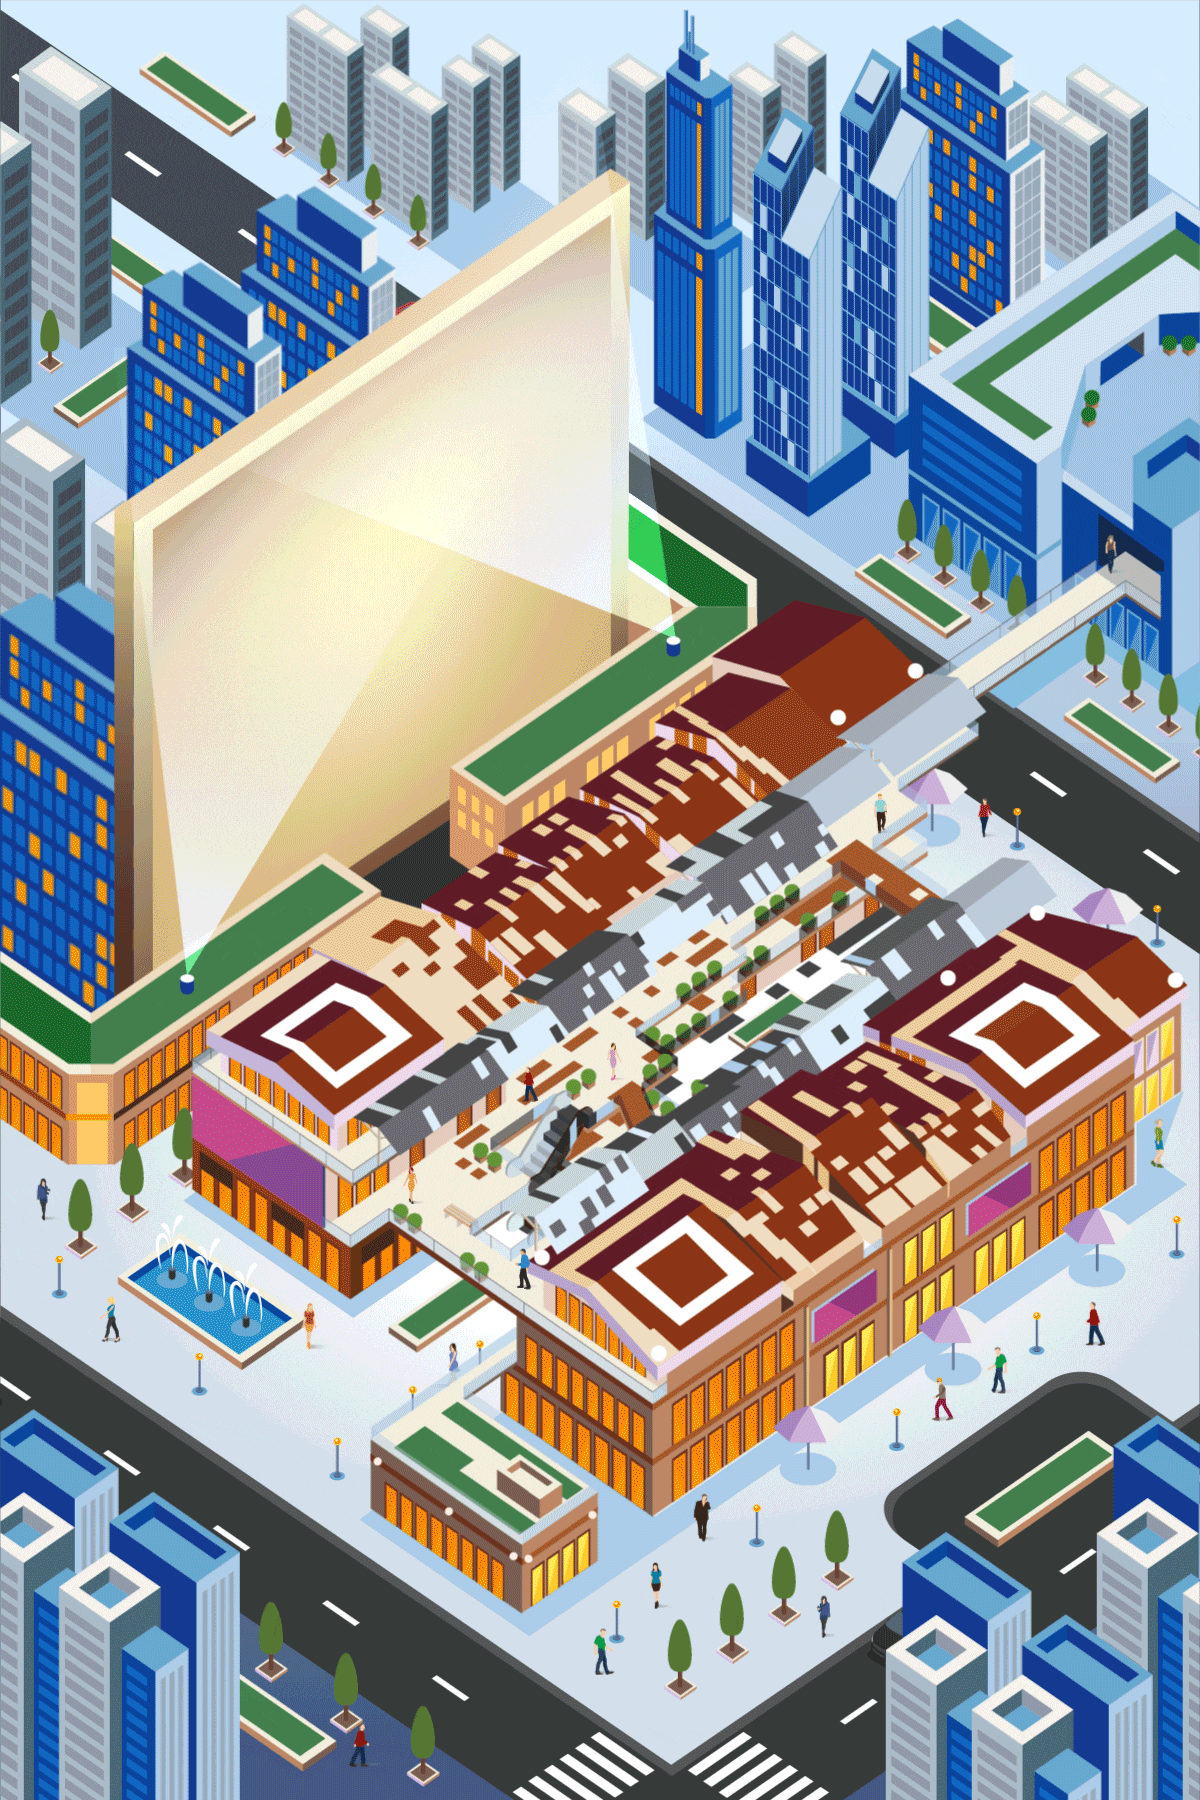 东隆商业广场立体动态艺术二维码创意二维码-第九工场设计外包